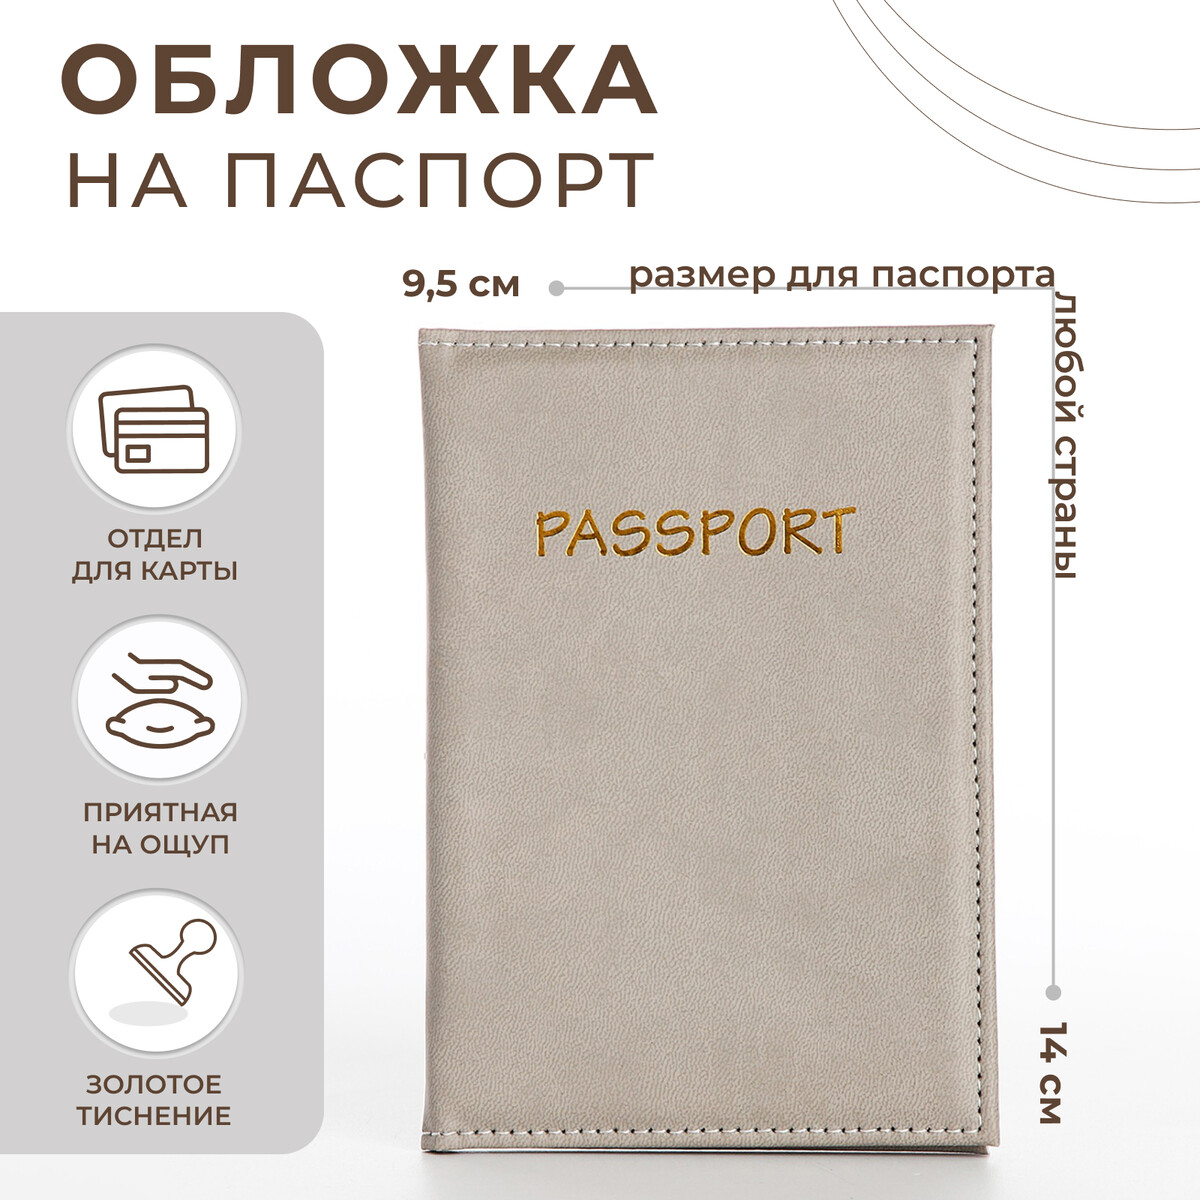 Обложка для паспорта, цвет бежево-серый